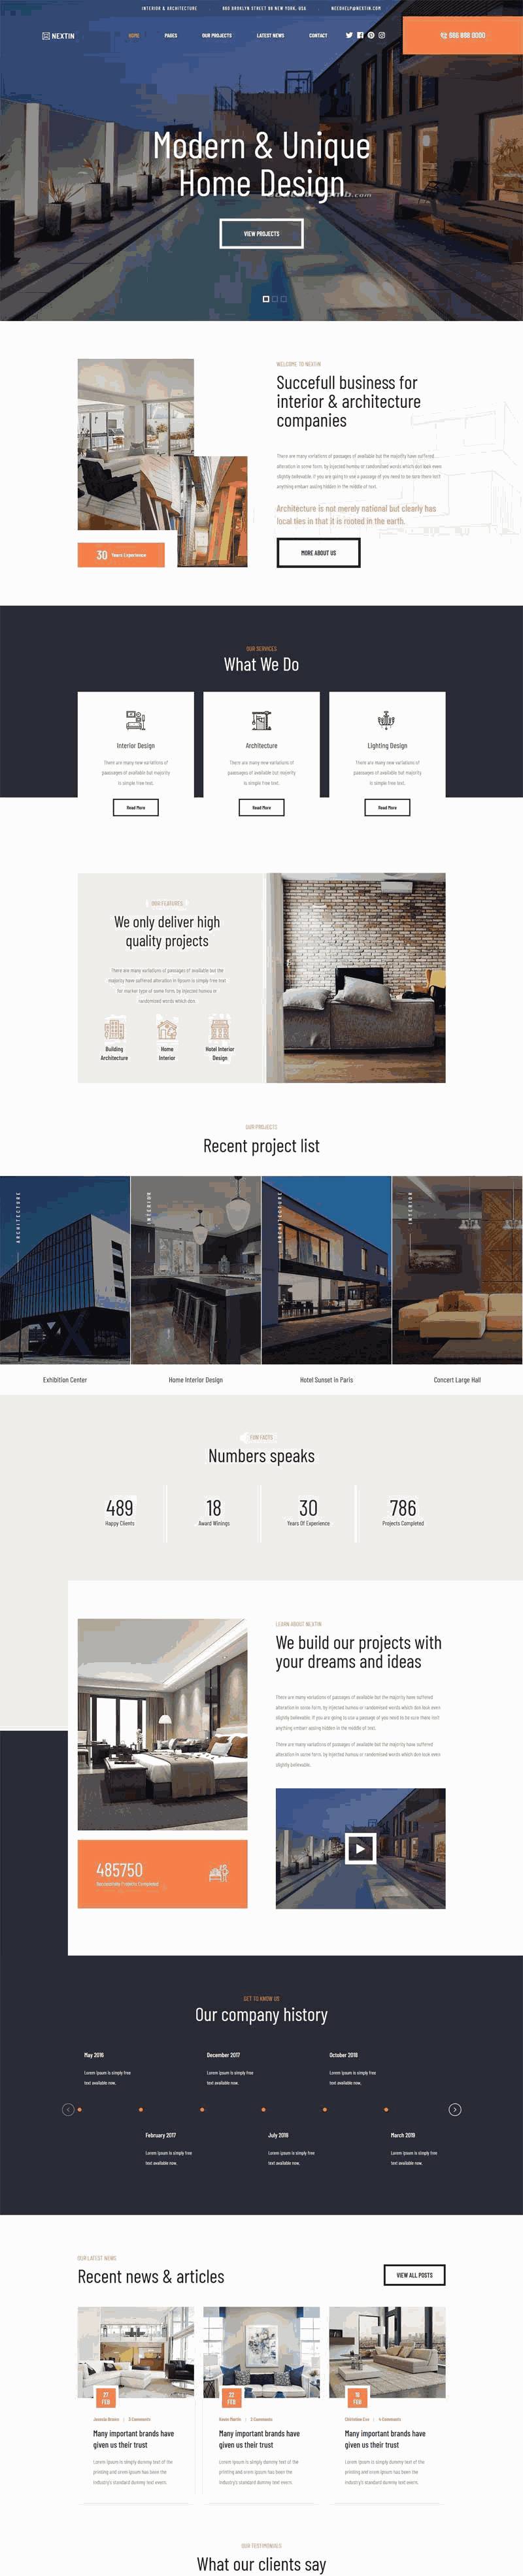 建筑室内设计公司网站WordPress模板含手机站演示图